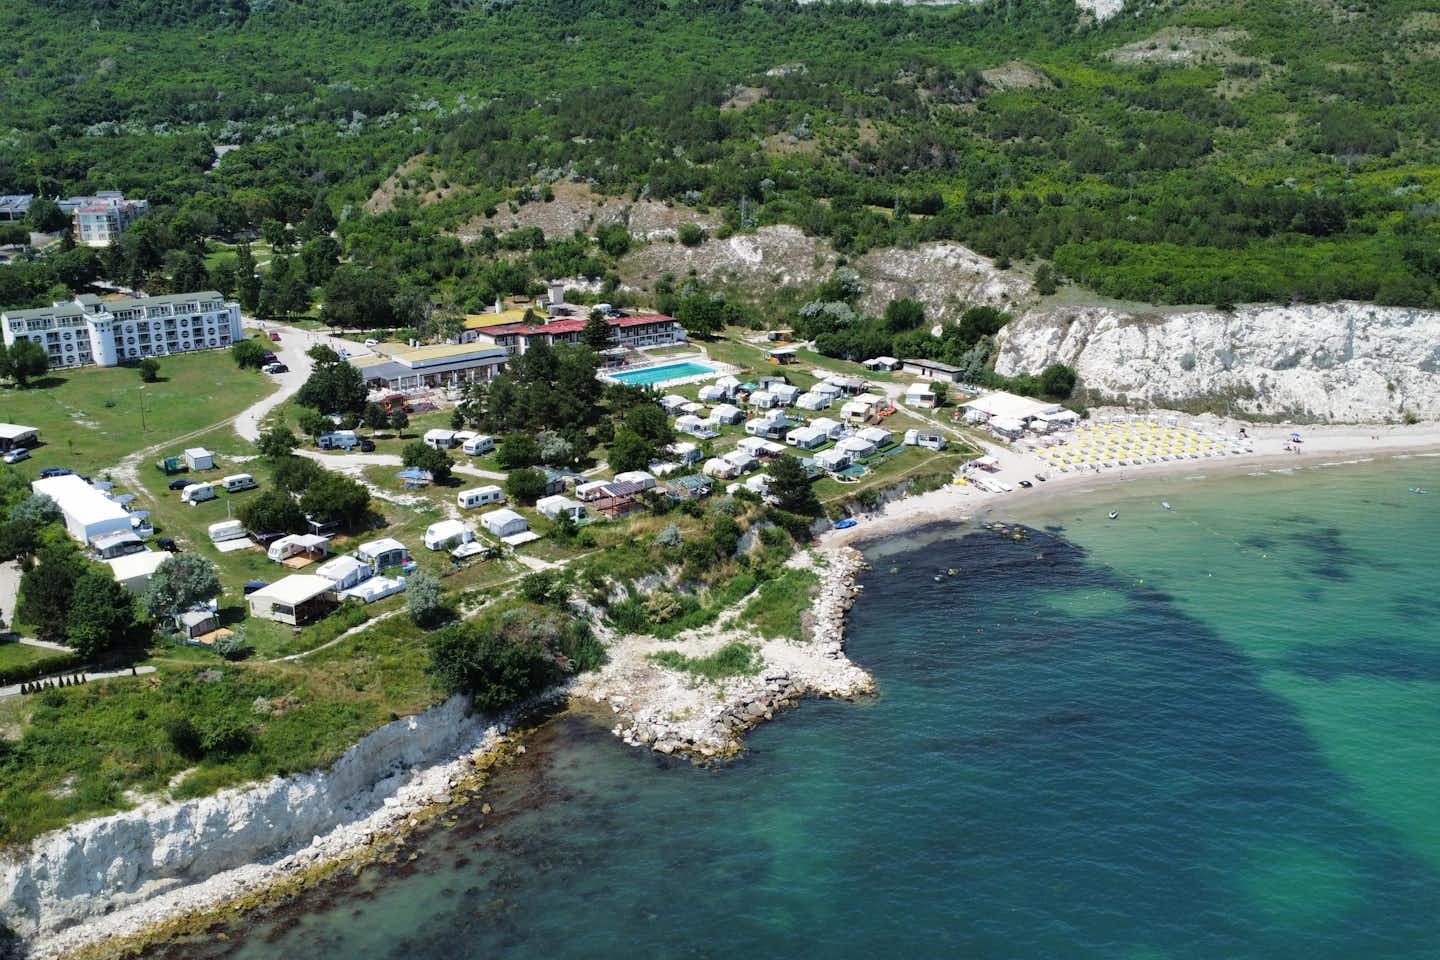 Saint George Resort  - Luftaufnahme des Campingplatzes am Meer